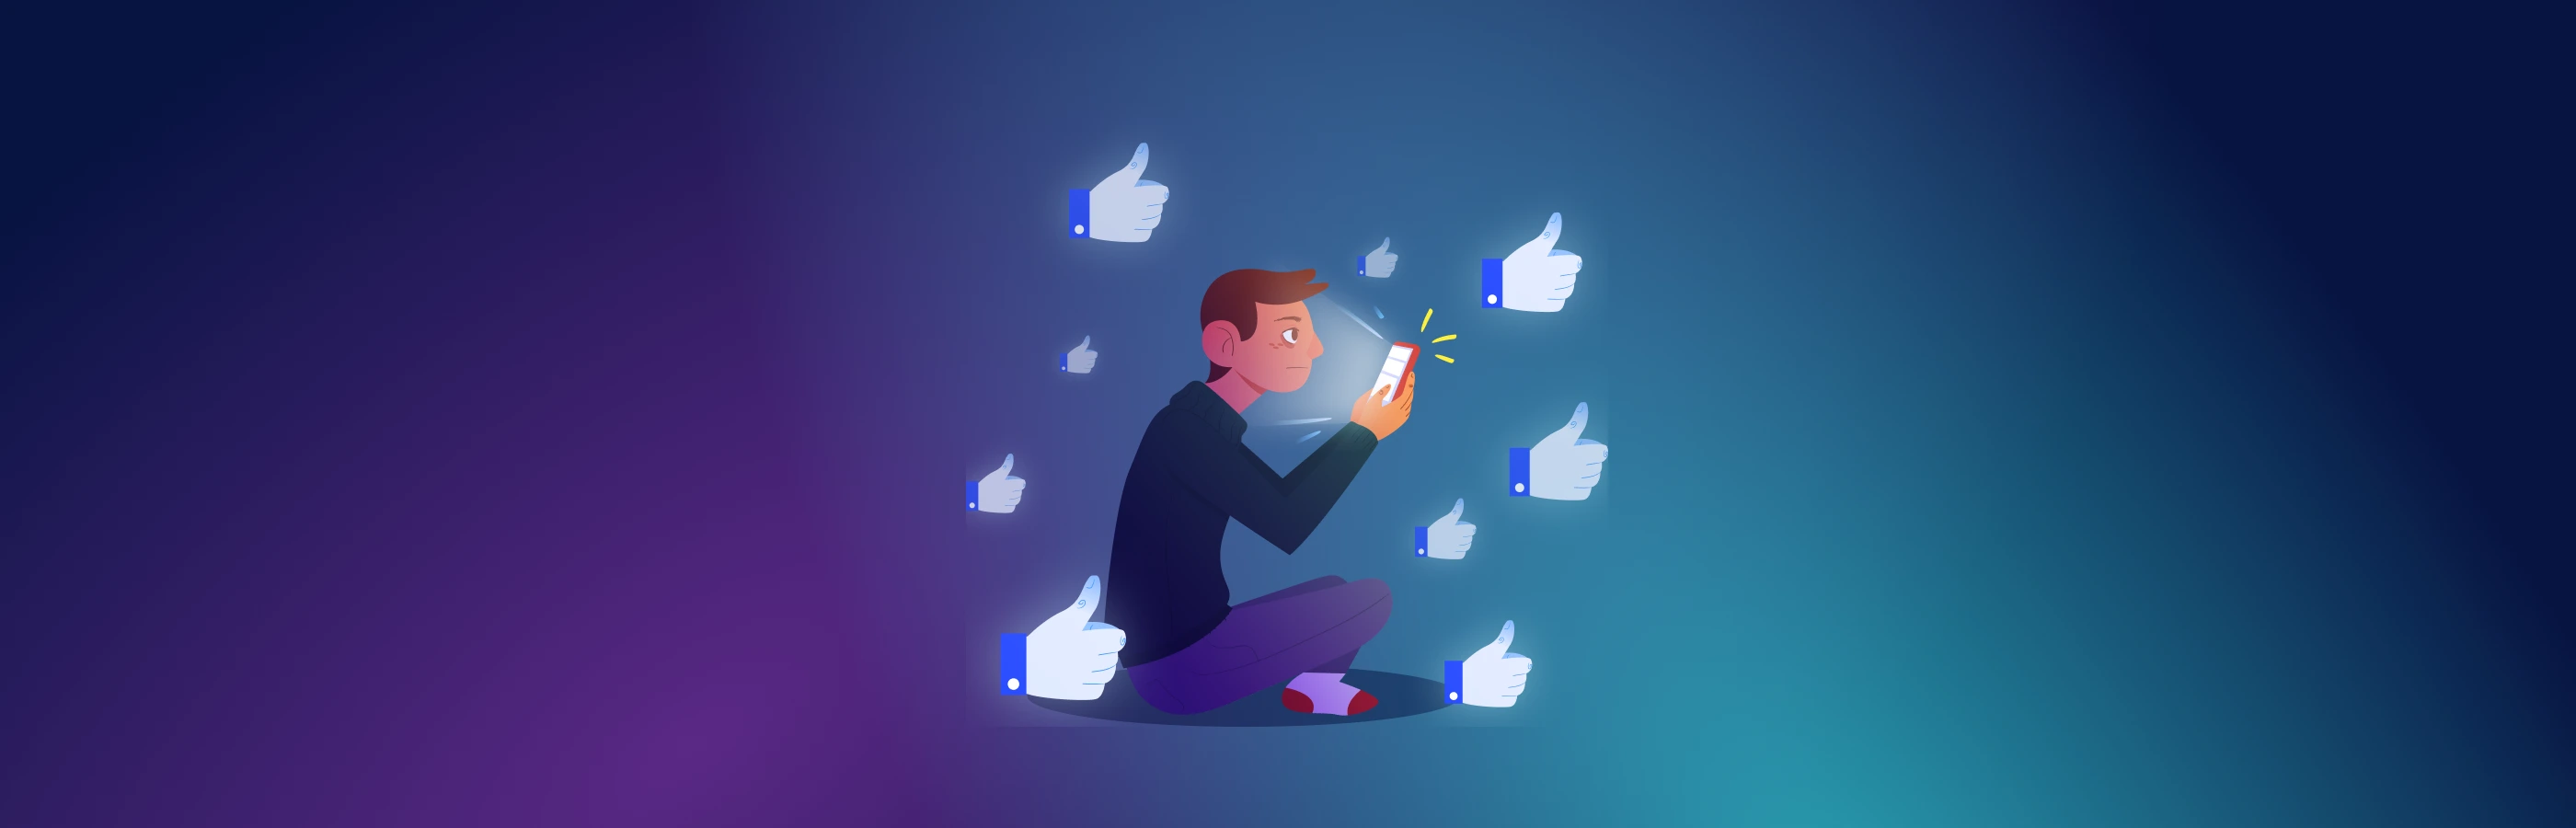 Wie man das Leben von Facebook-Konten verlängert: Aufwärmen, Inhalt, Werbung